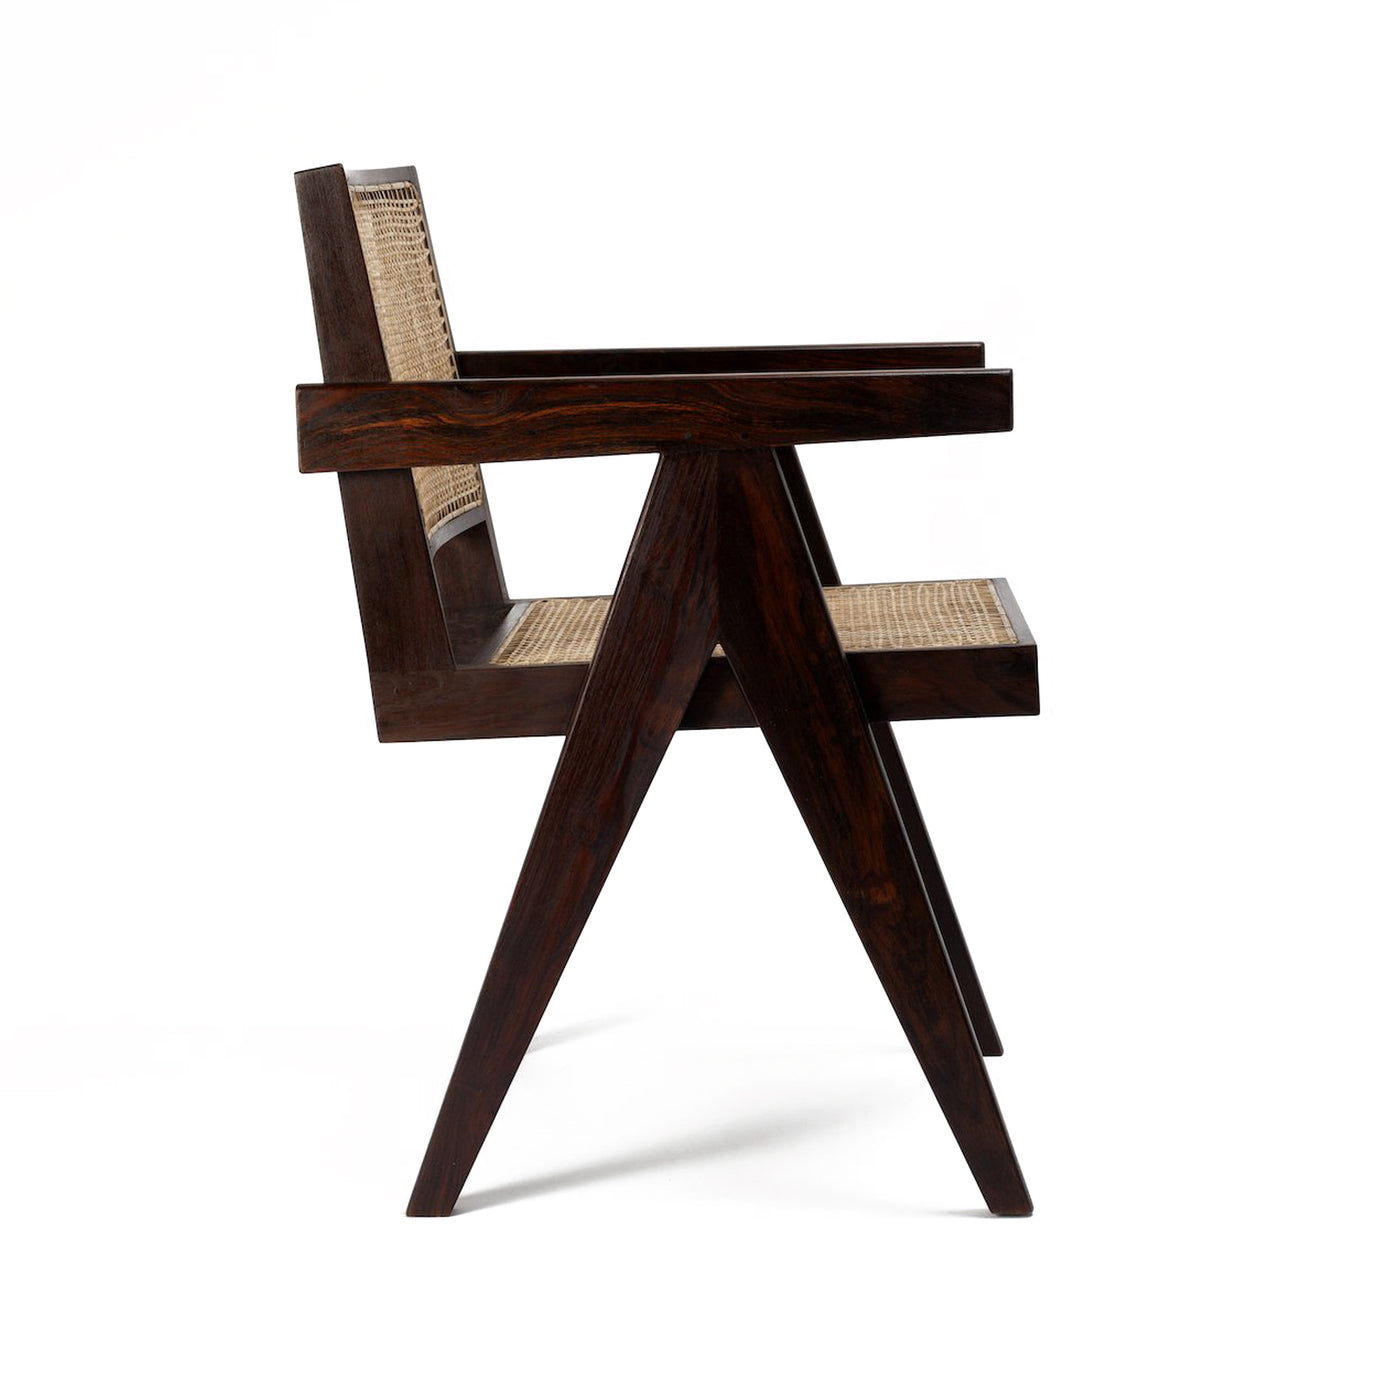 Pierre Jaenneret, židle podle pierre jeanneret, design 50. let, minimaistická židle, Srelle, Židle do minimalistických interiérů, luxusní židle, Pierre židle, romein concept store